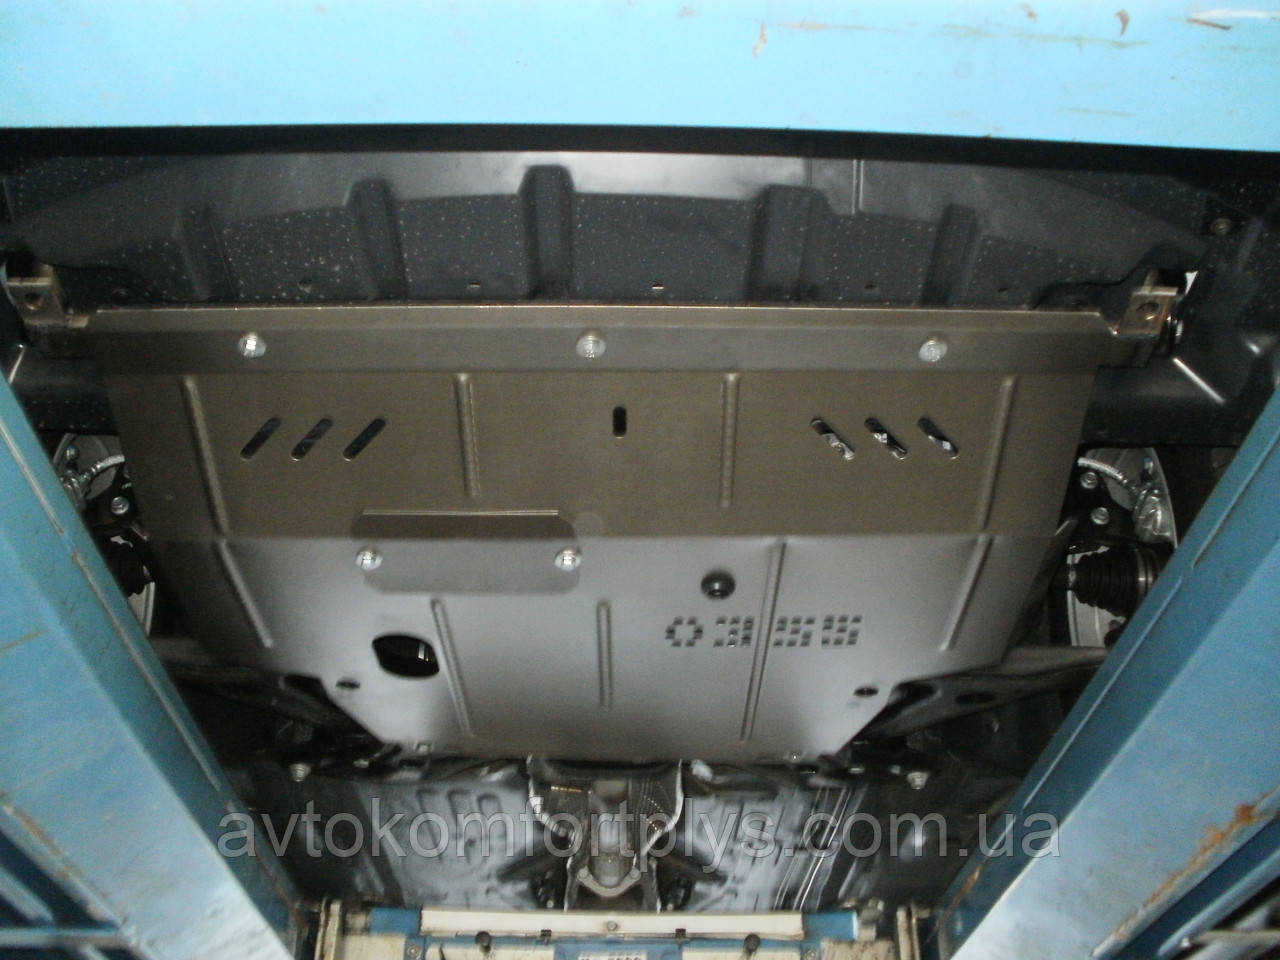 Металлическая (стальная) защита двигателя (картера) Geely Emgrand  (2011-) (все обьемы)